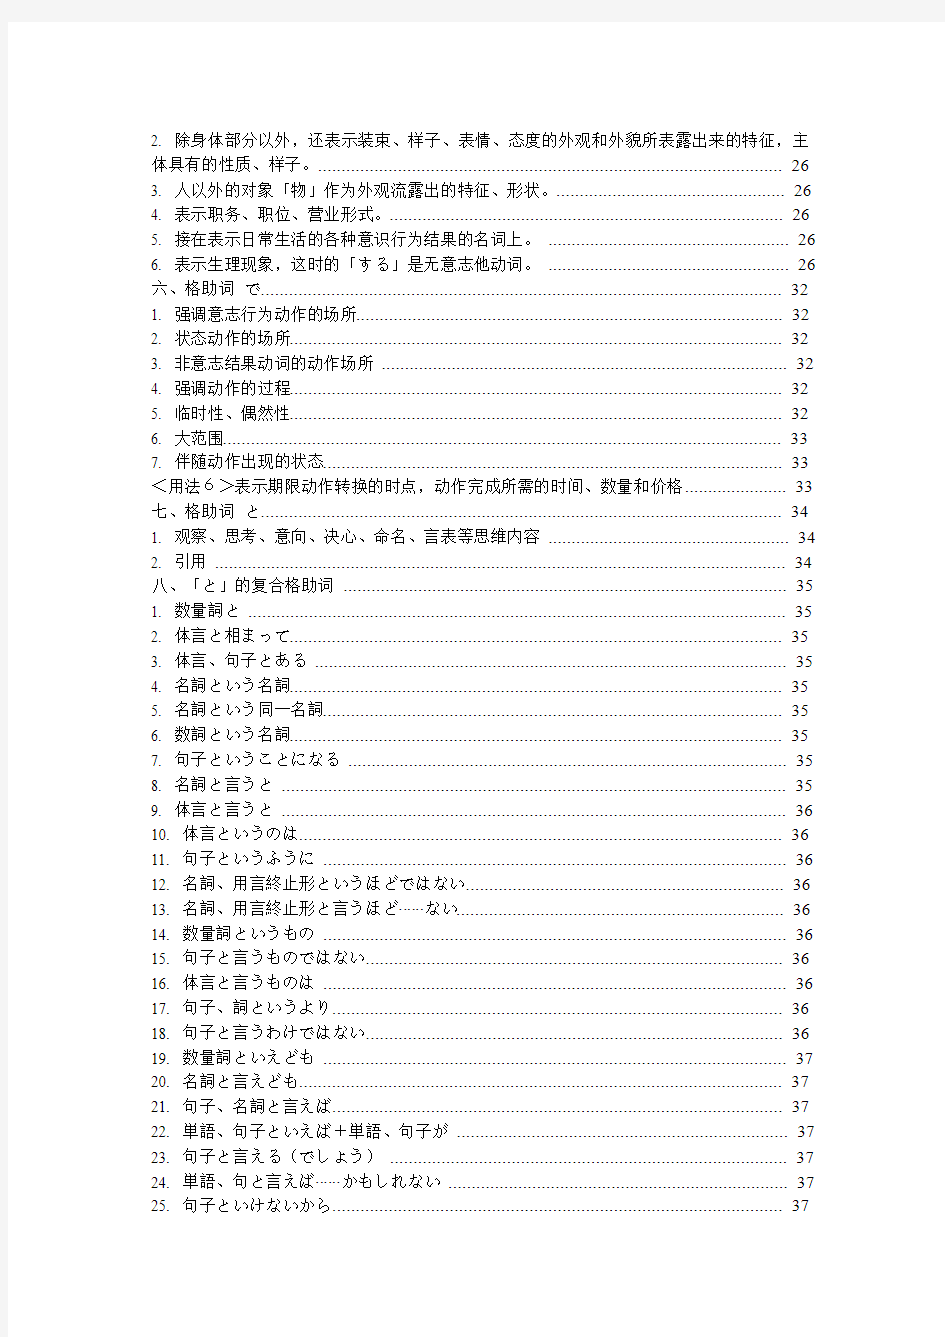 日语格助词全部学习笔记(免费)